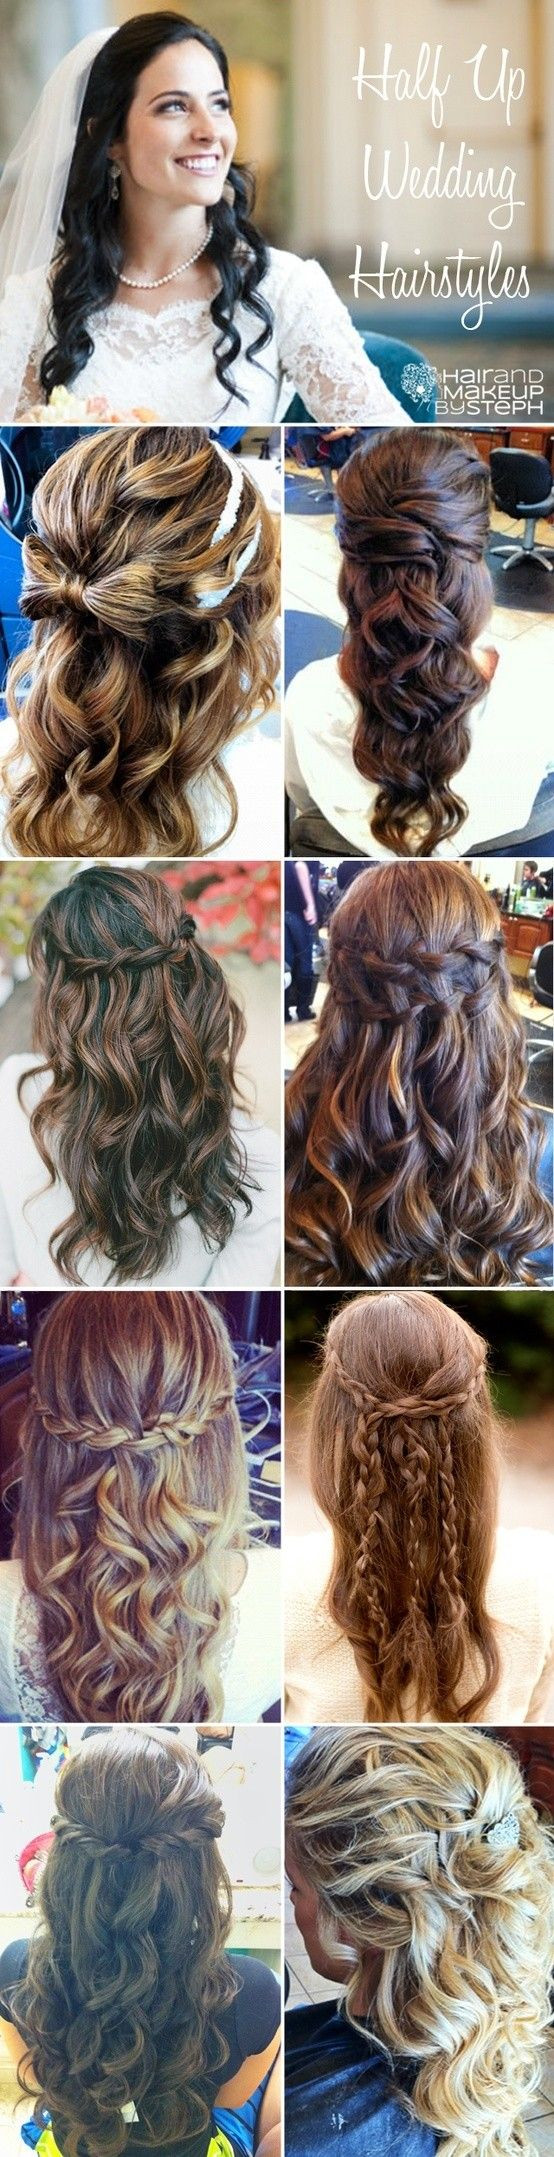 Teenage Hairstyles For Weddings
 Cute Hairstyles For Long Hair Teenage Girls 2013 8 554